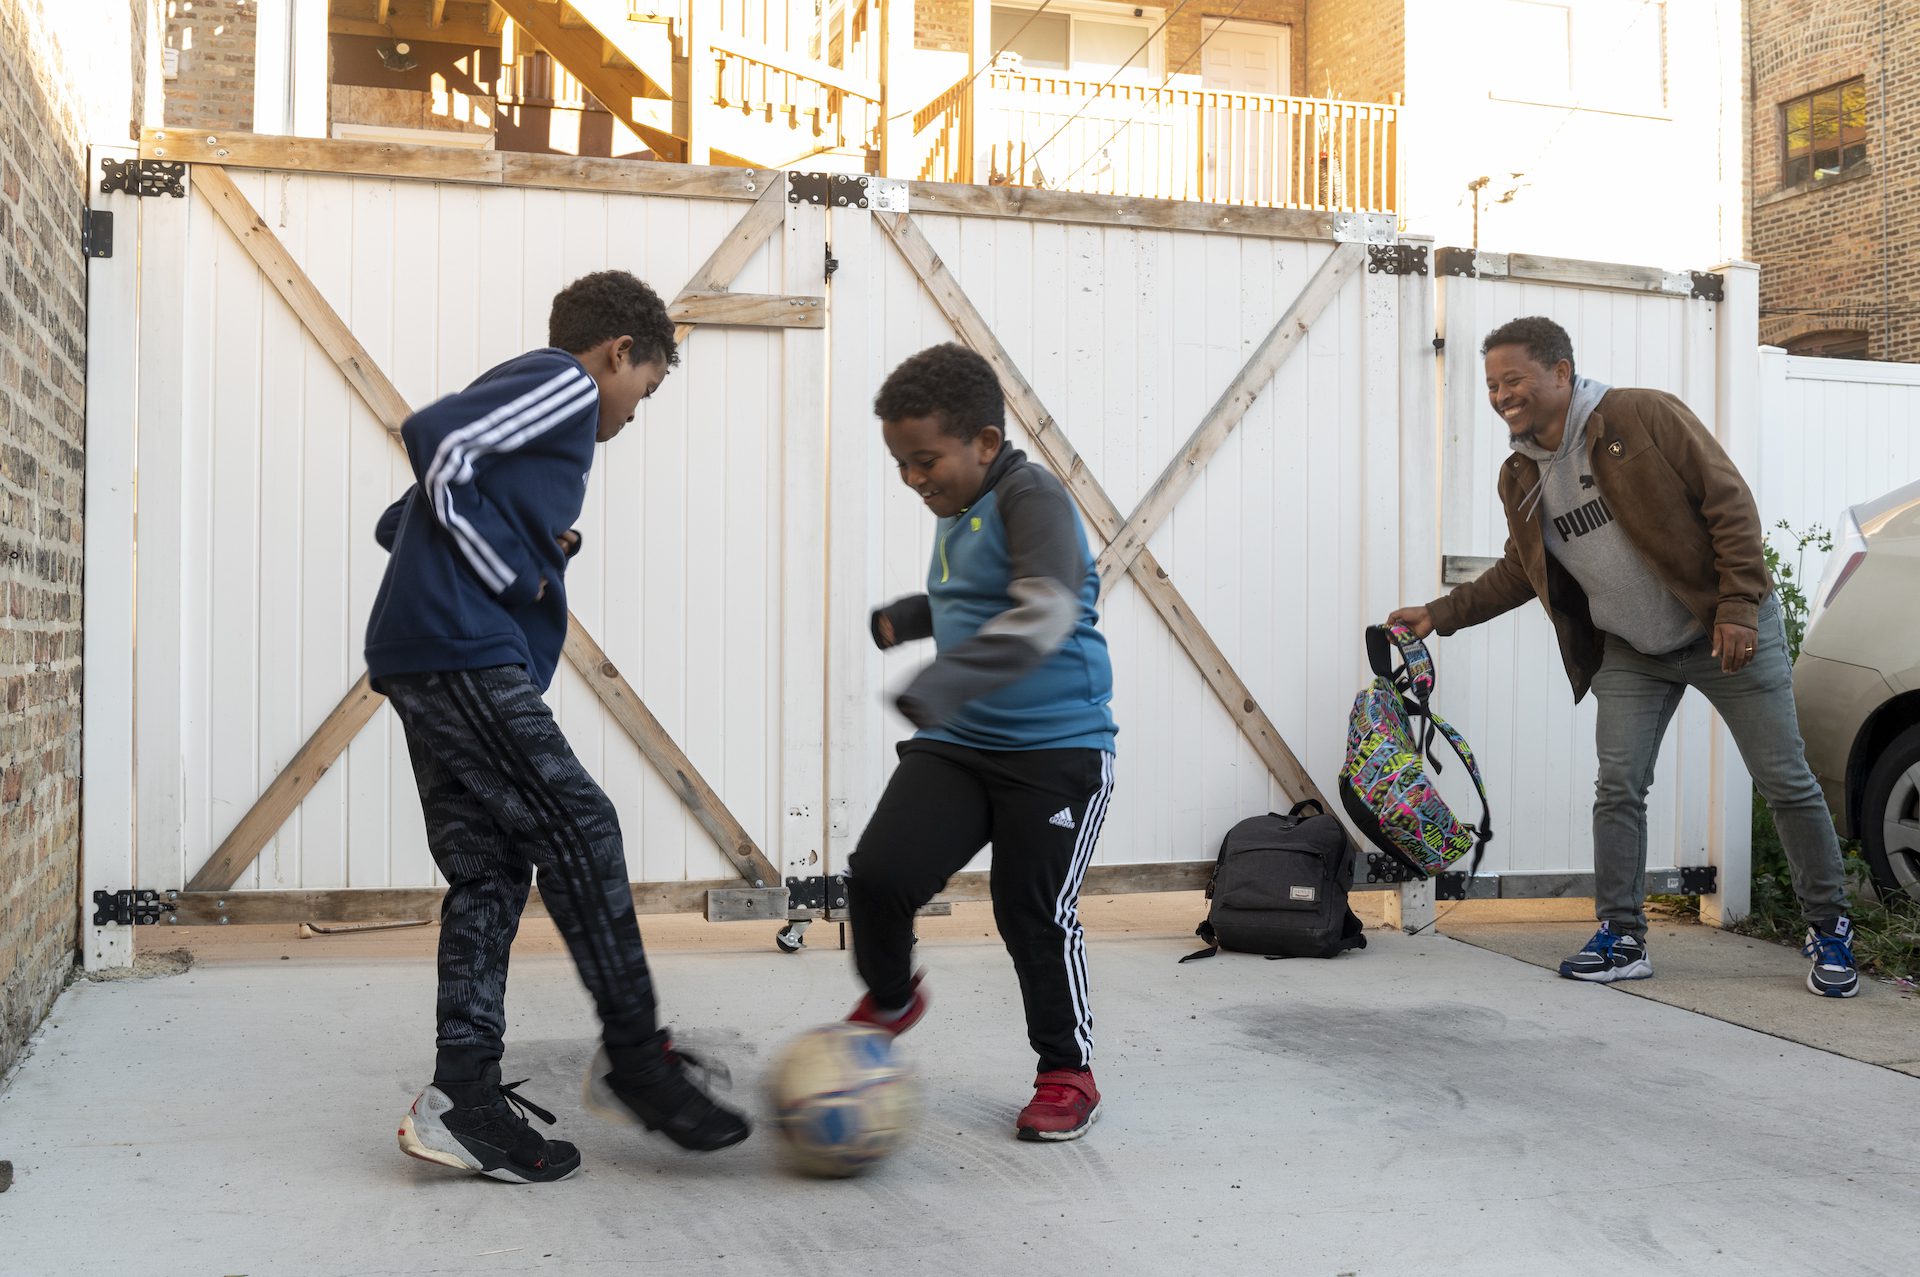 Dos niños juegan al fútbol mientras un hombre sonríe con una mochila en la mano.